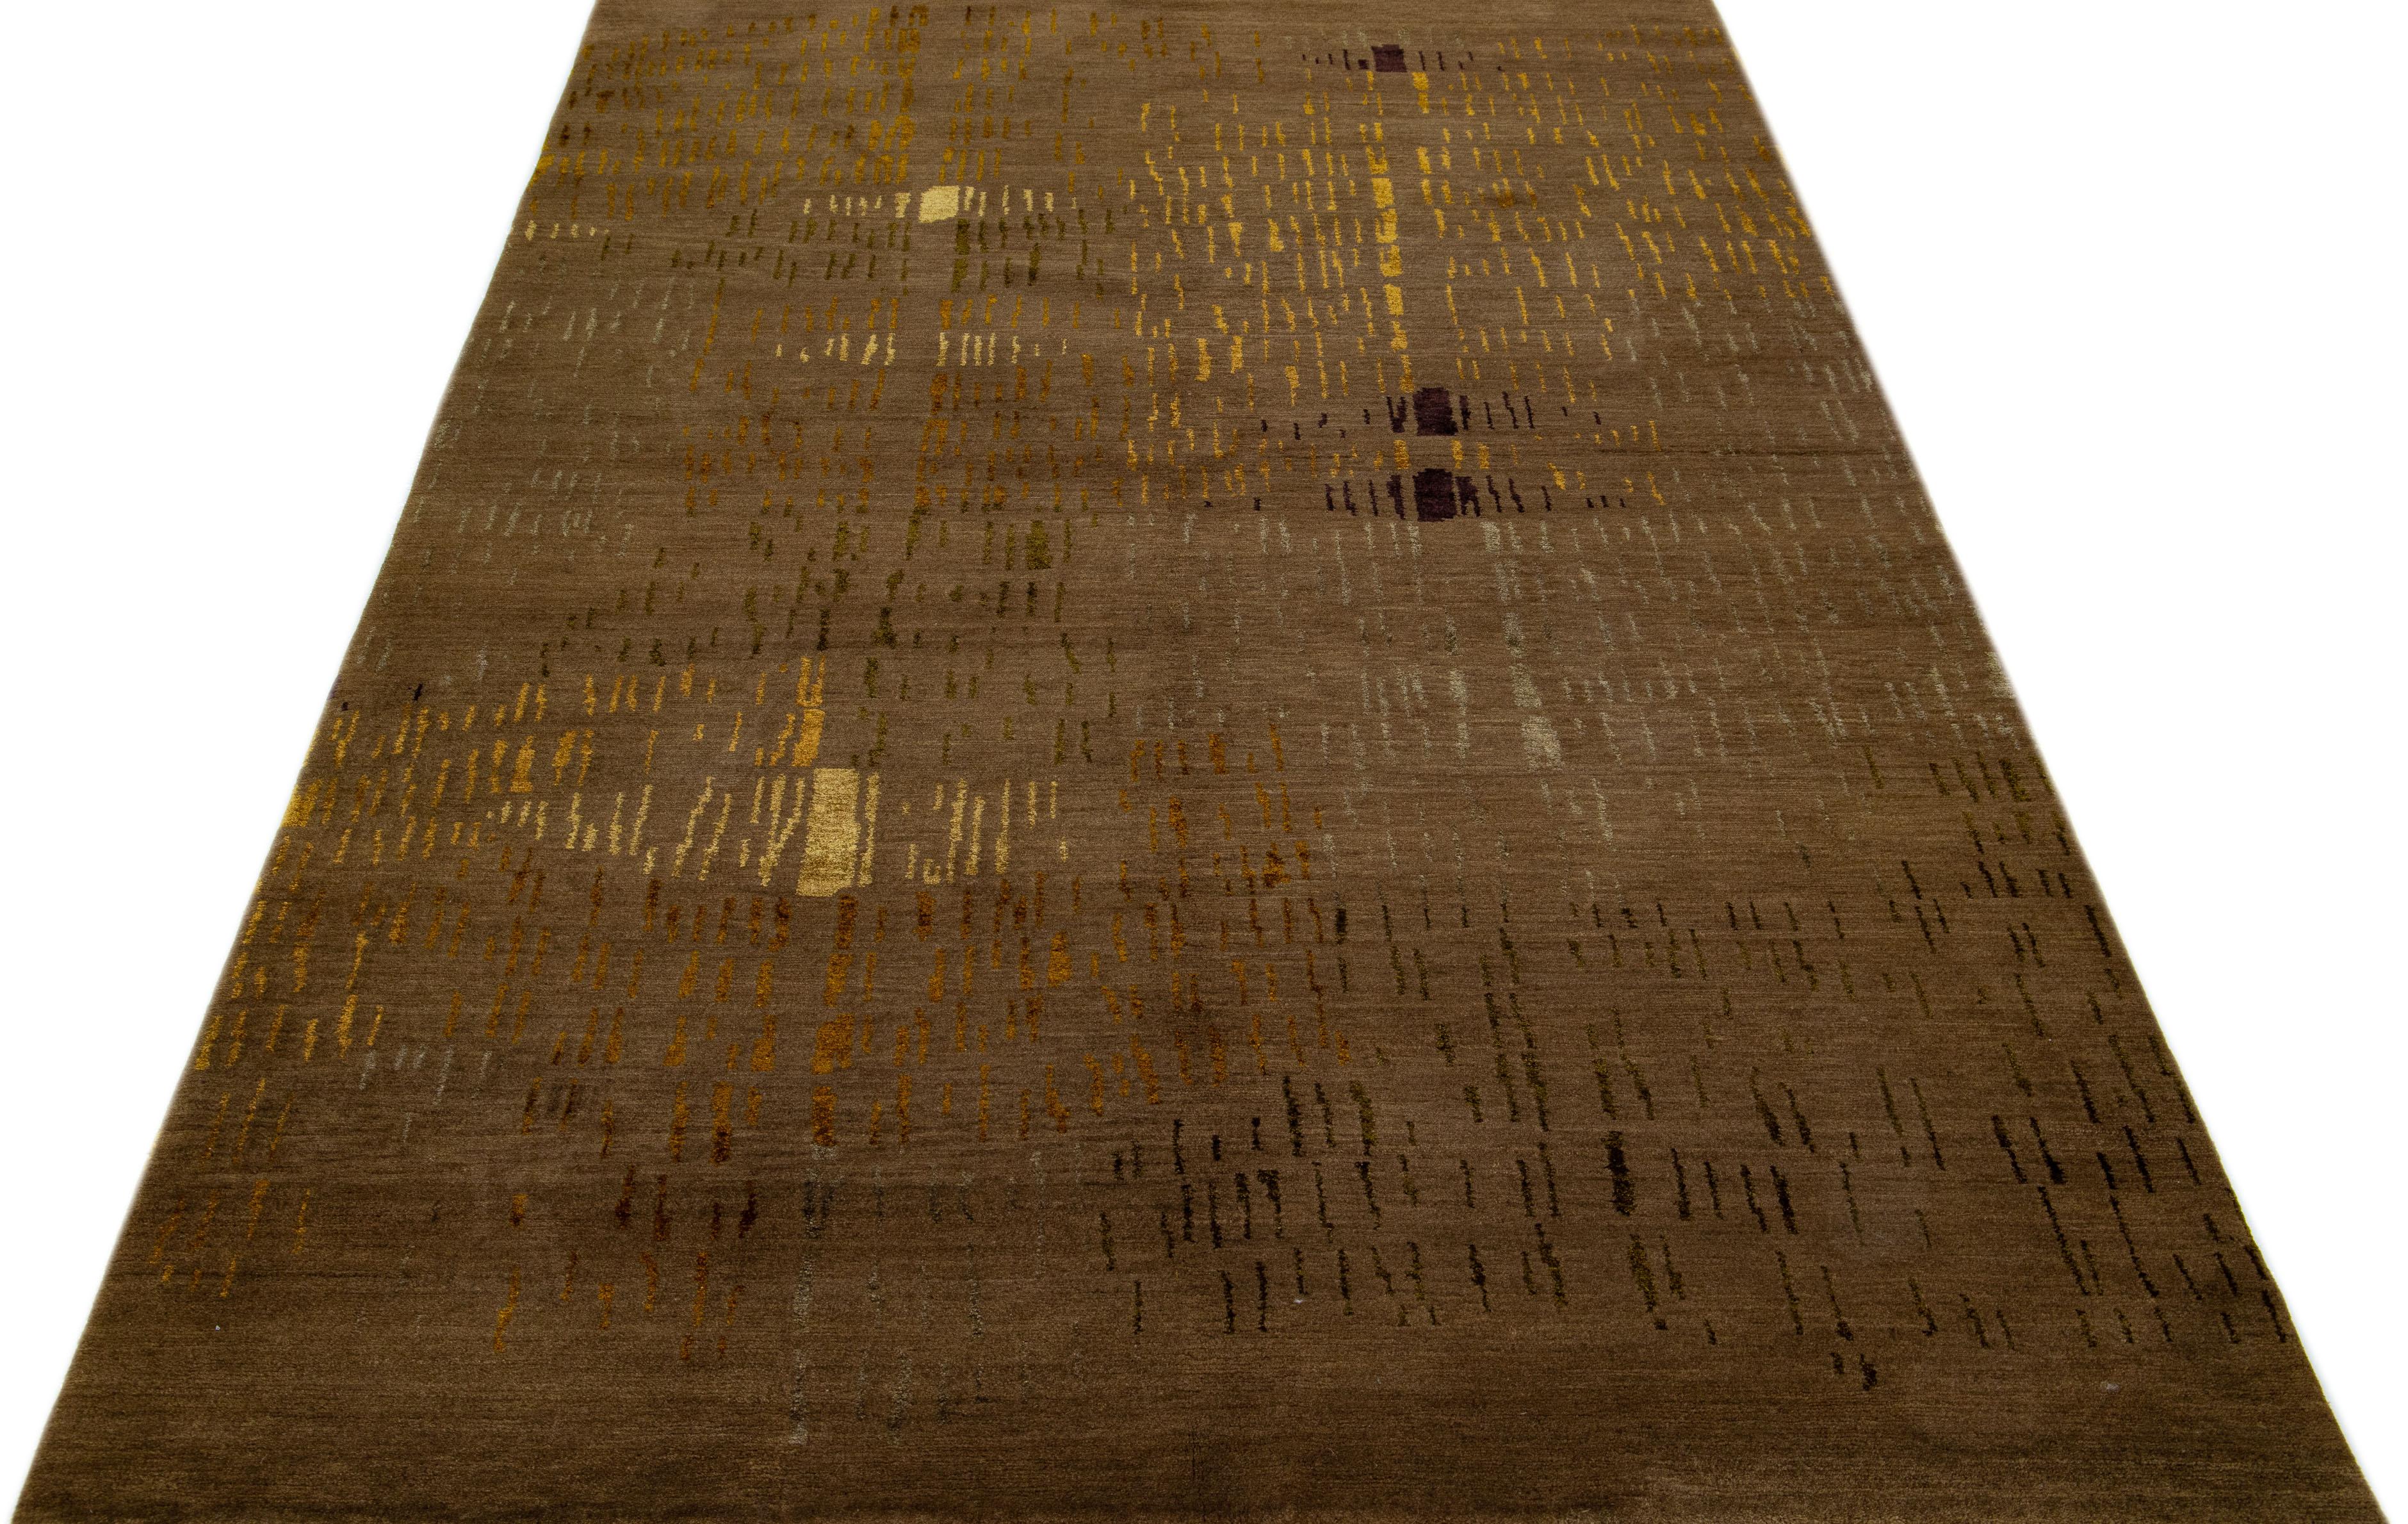 Dieser moderne nepalesische Teppich wurde kunstvoll aus hochwertigen Woll- und Seidenmaterialien gefertigt und zeigt ein raffiniertes abstraktes Muster in tiefen Brauntönen, das durch üppige schwarze und goldene Verzierungen elegant hervorgehoben